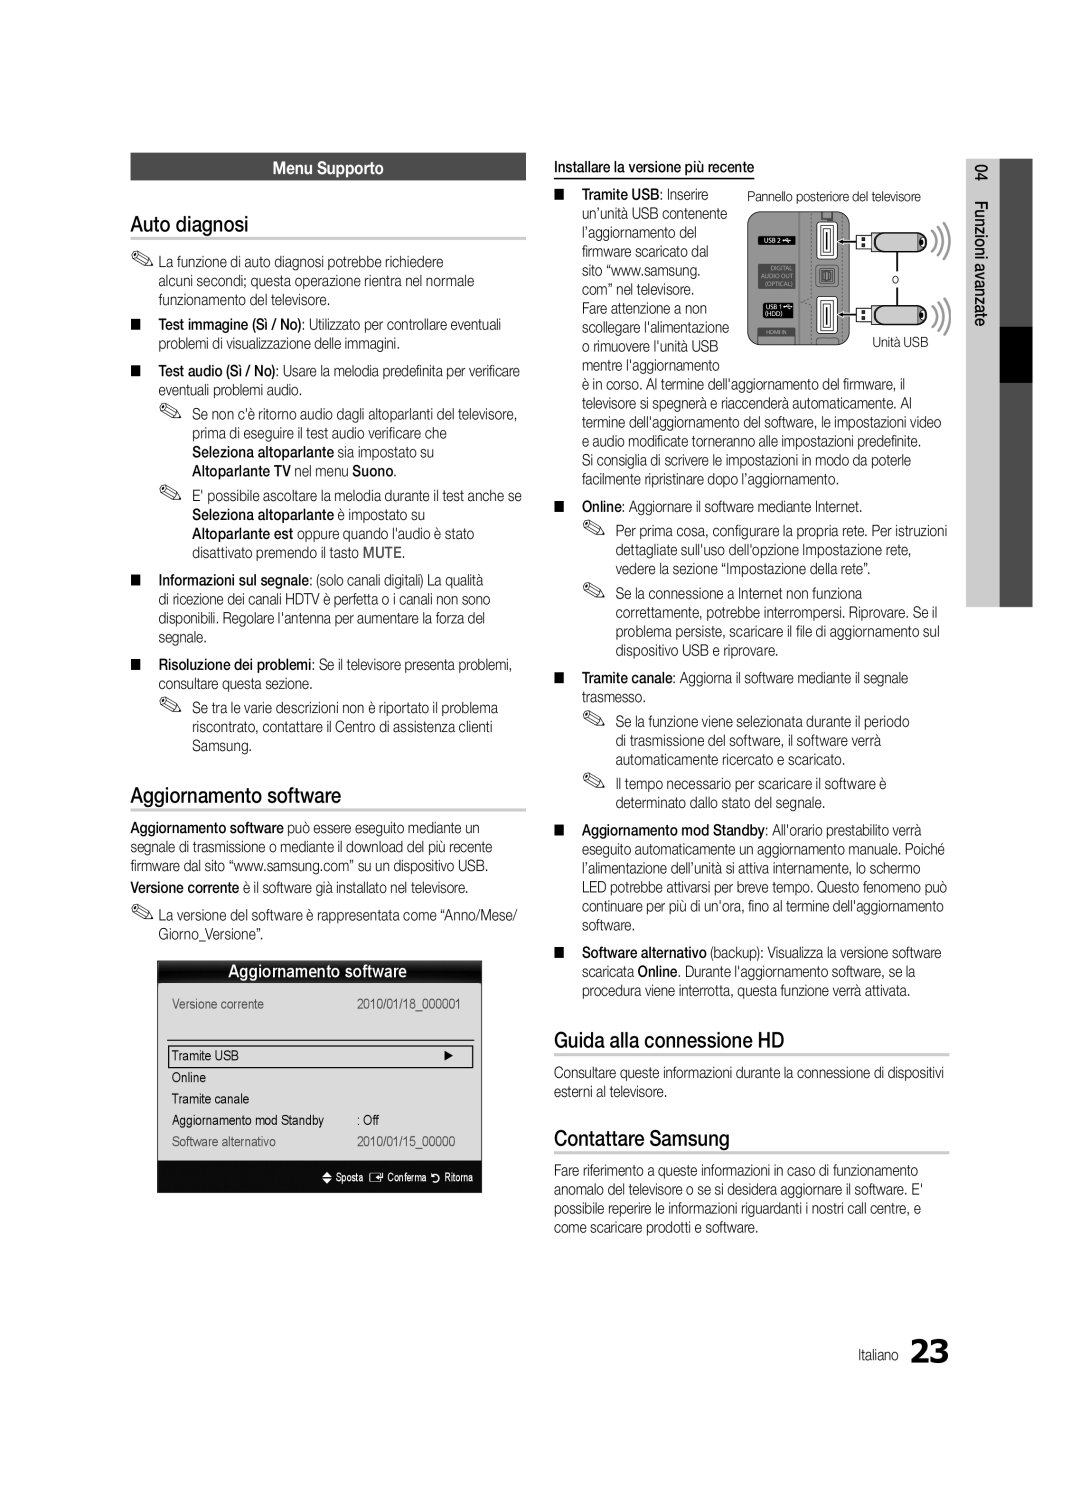 Samsung UE46C5800QKXXU Auto diagnosi, Aggiornamento software, Guida alla connessione HD, Contattare Samsung, Menu Supporto 